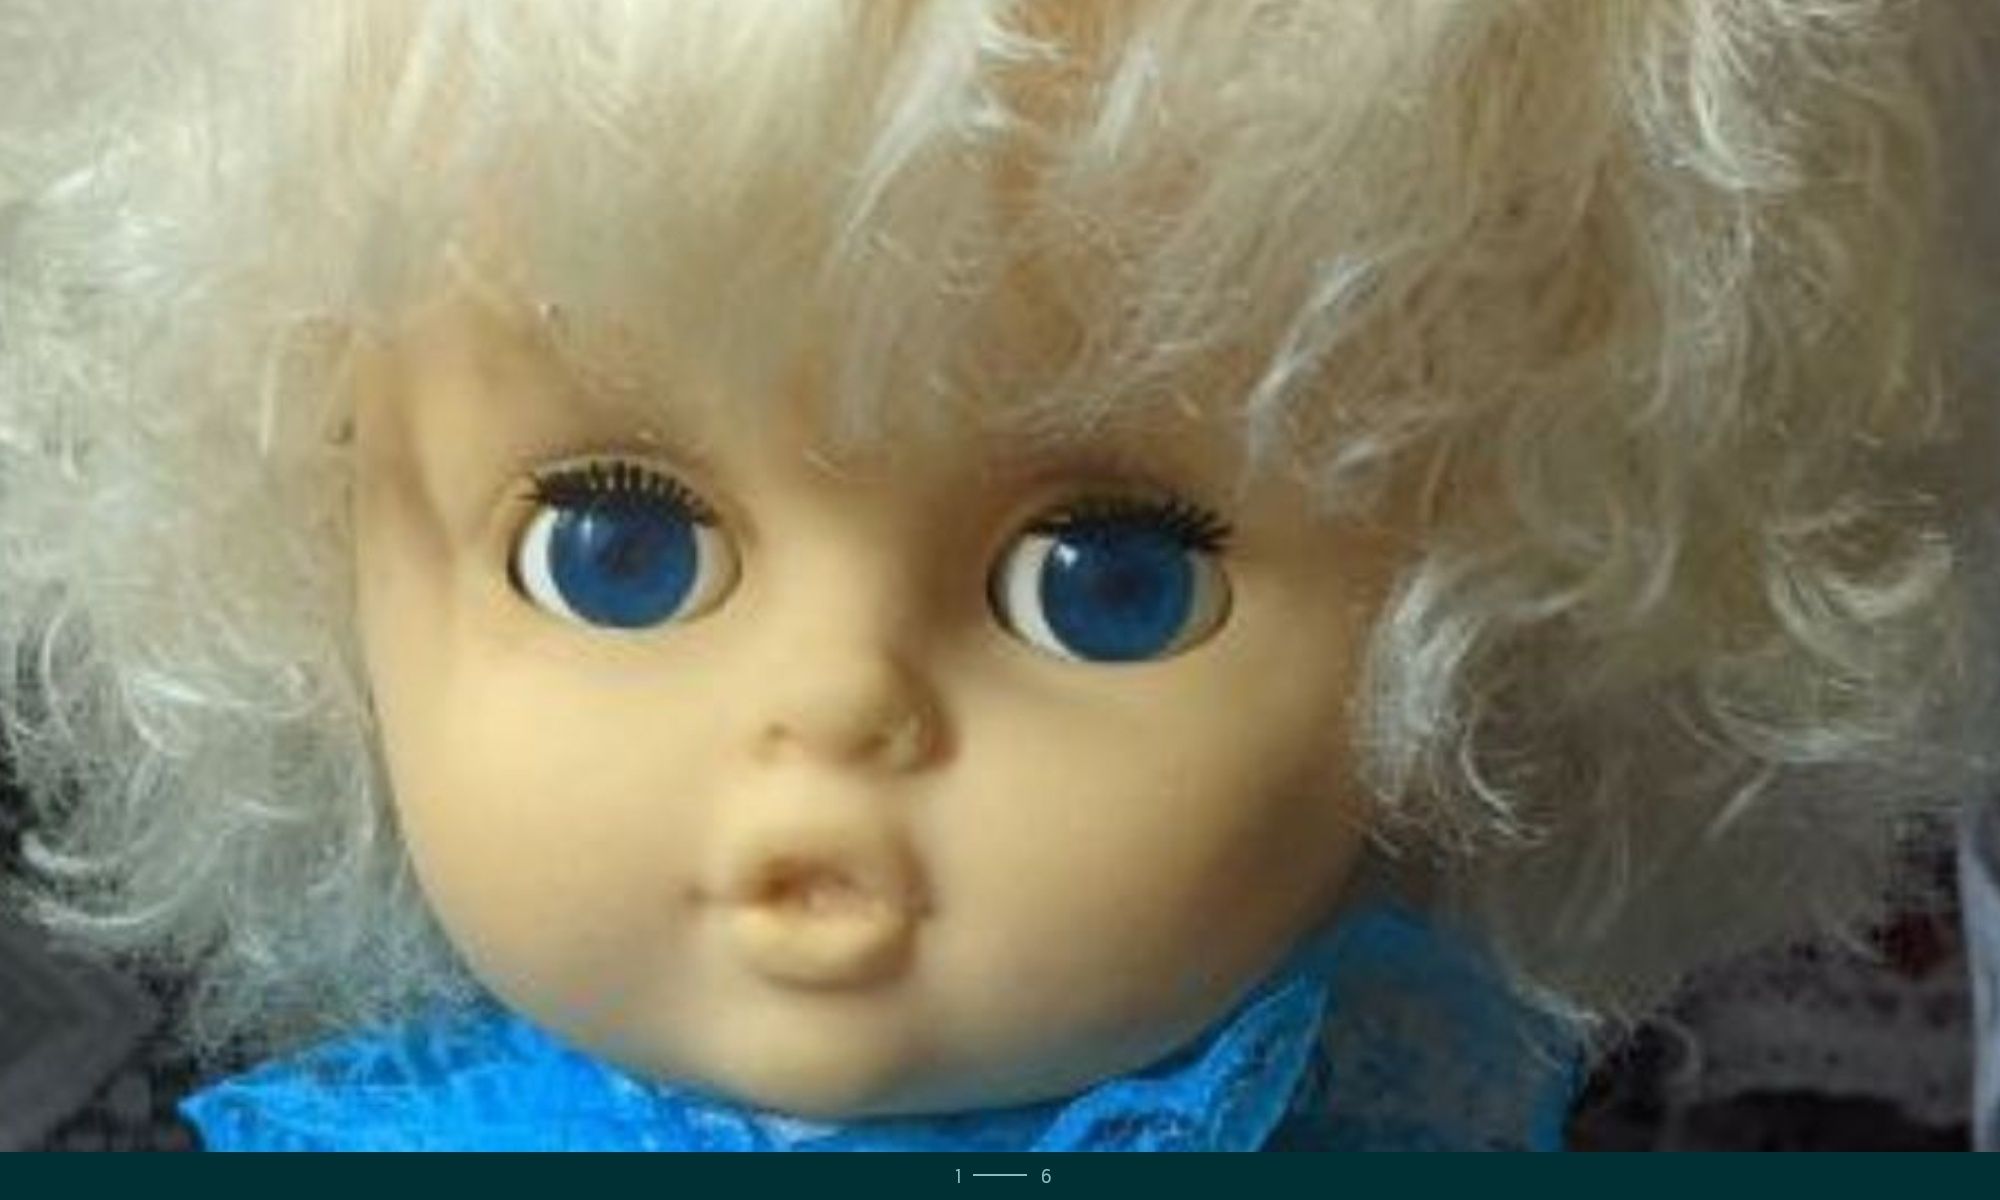 Кукла  в коллекцию,  Невеста ,Украиночка,ООАК  МАЛЬВИНА ,куклы СССР.